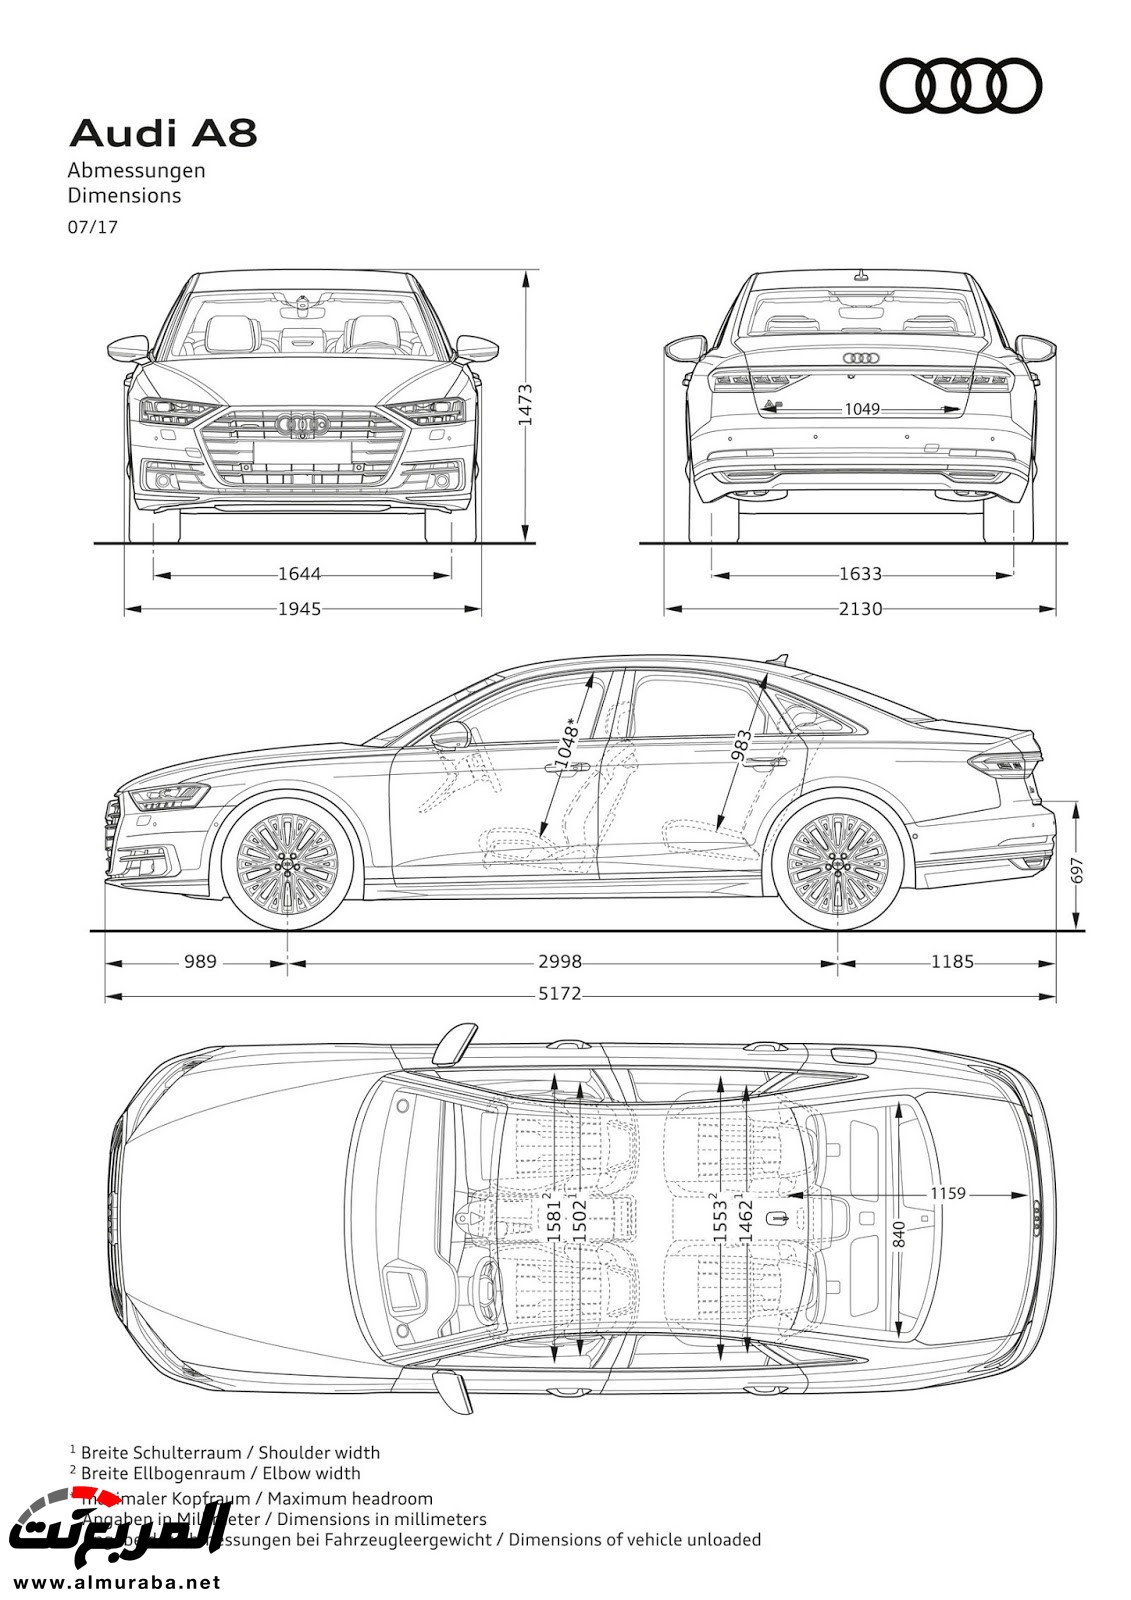 أودي A8 2018 الجديدة كلياً تكشف نفسها بتصميم وتقنيات متطورة "معلومات + 100 صورة" Audi A8 102